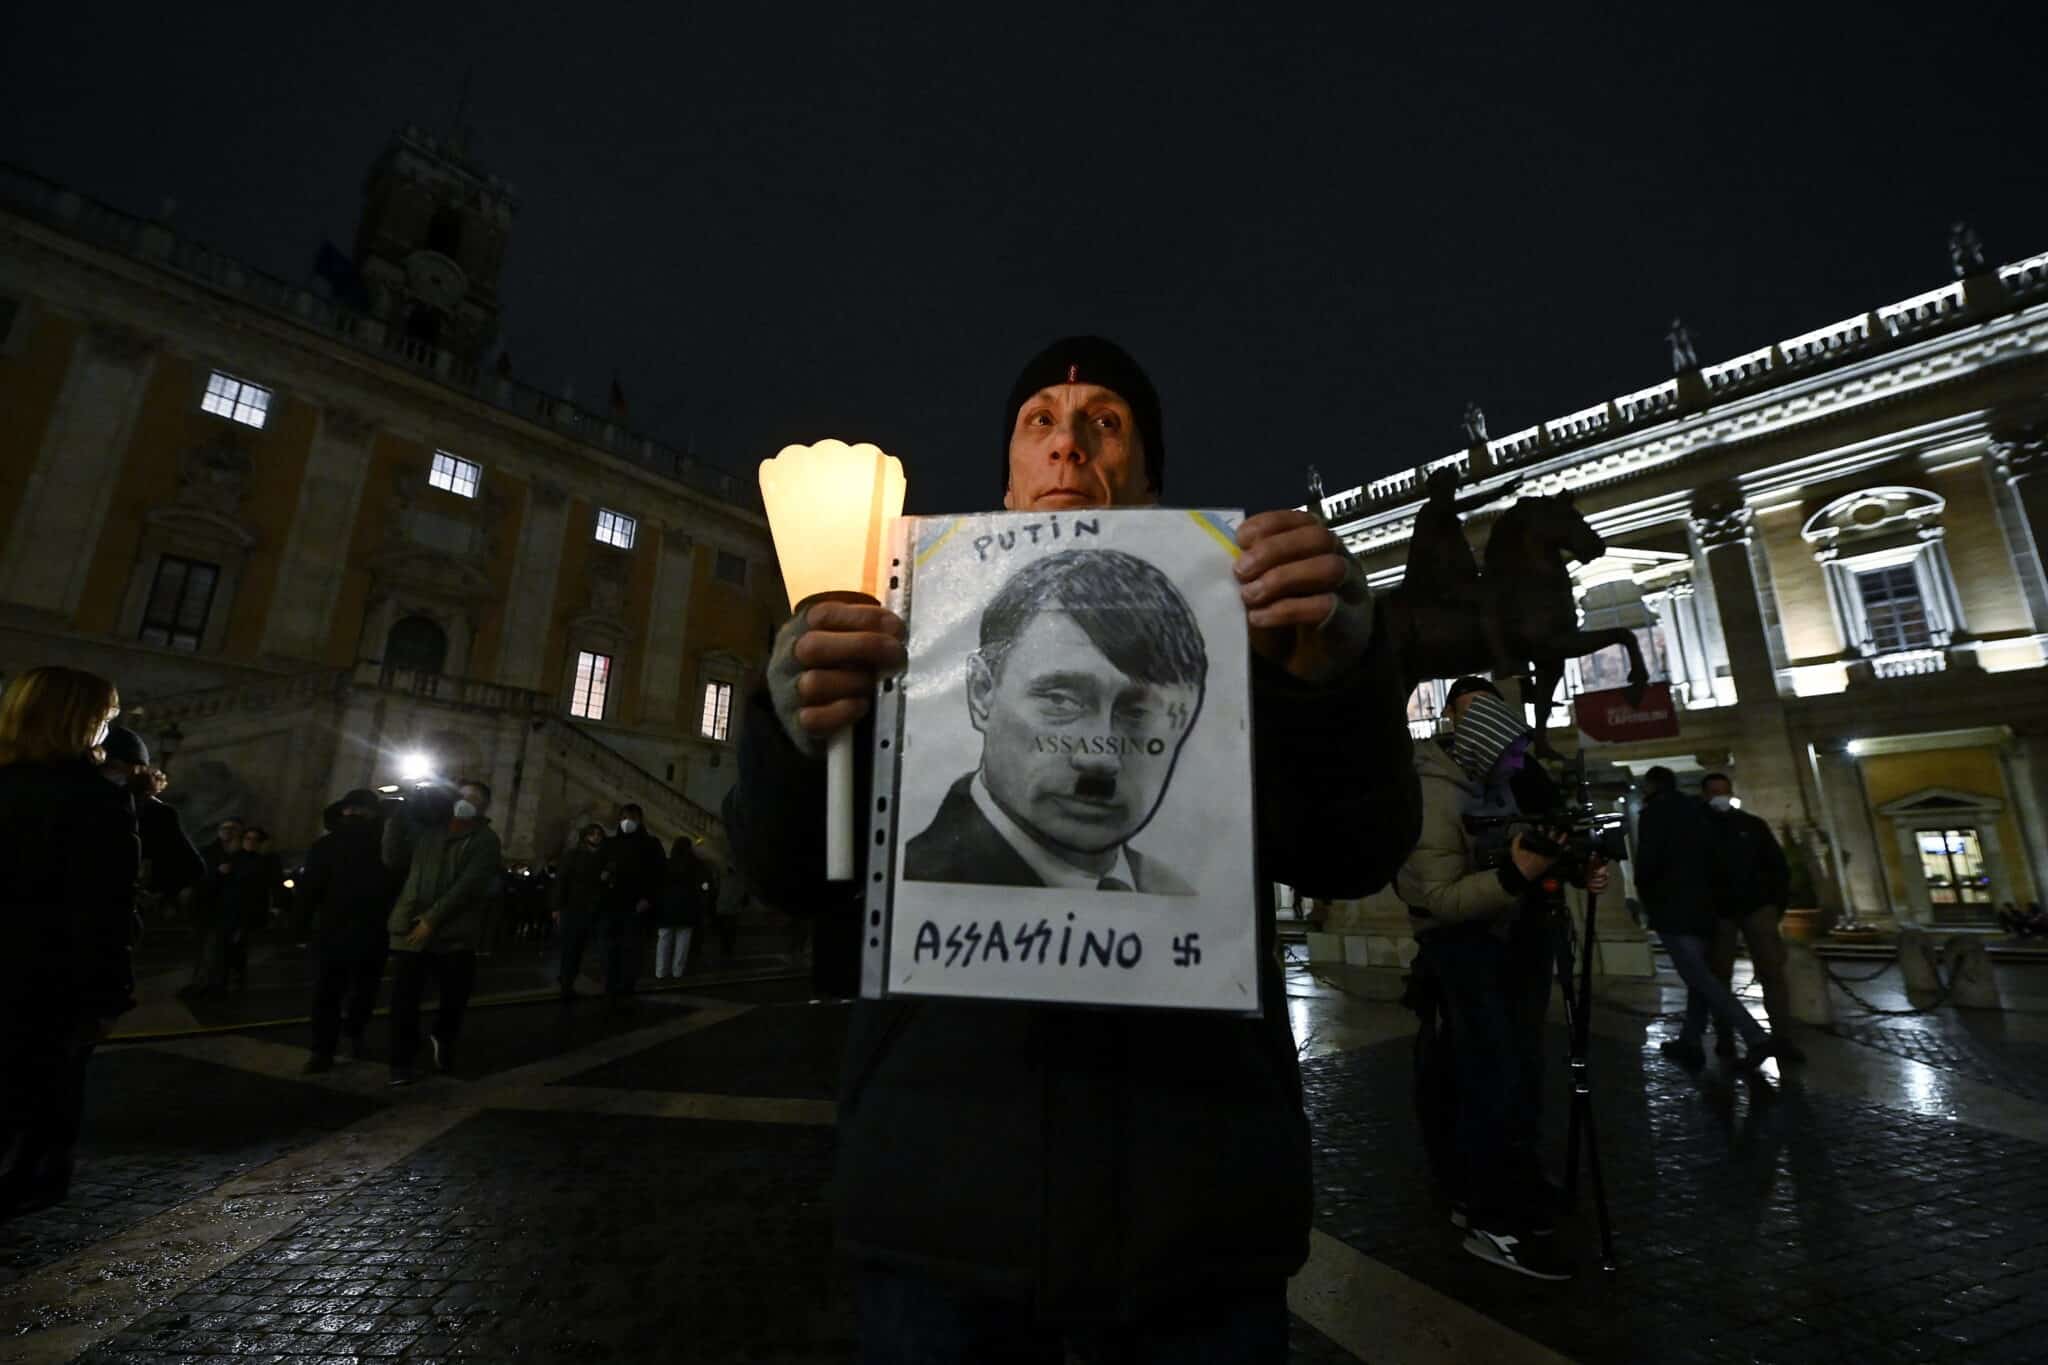 Un hombre muestra un cartel en el que se ve a Putin como si fuera Hitler en una manifestación en Roma